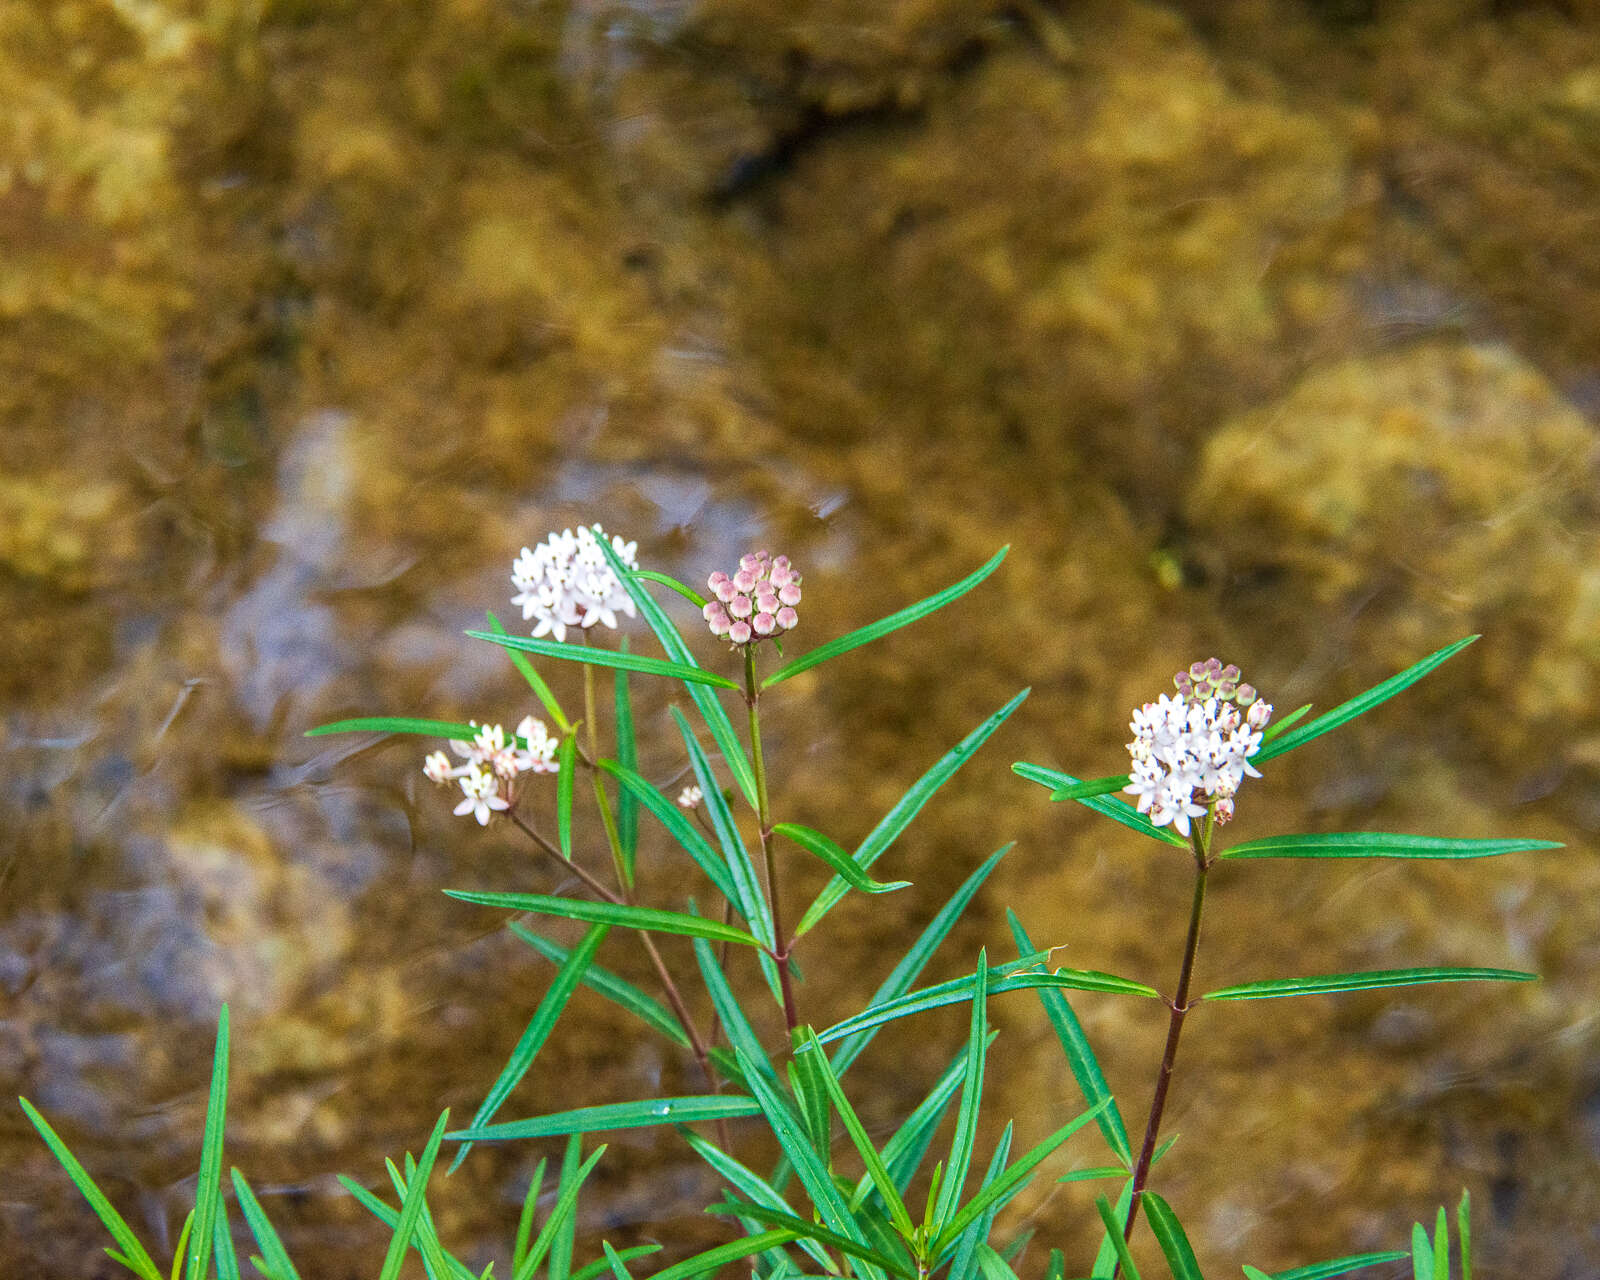 Image of Arizona milkweed